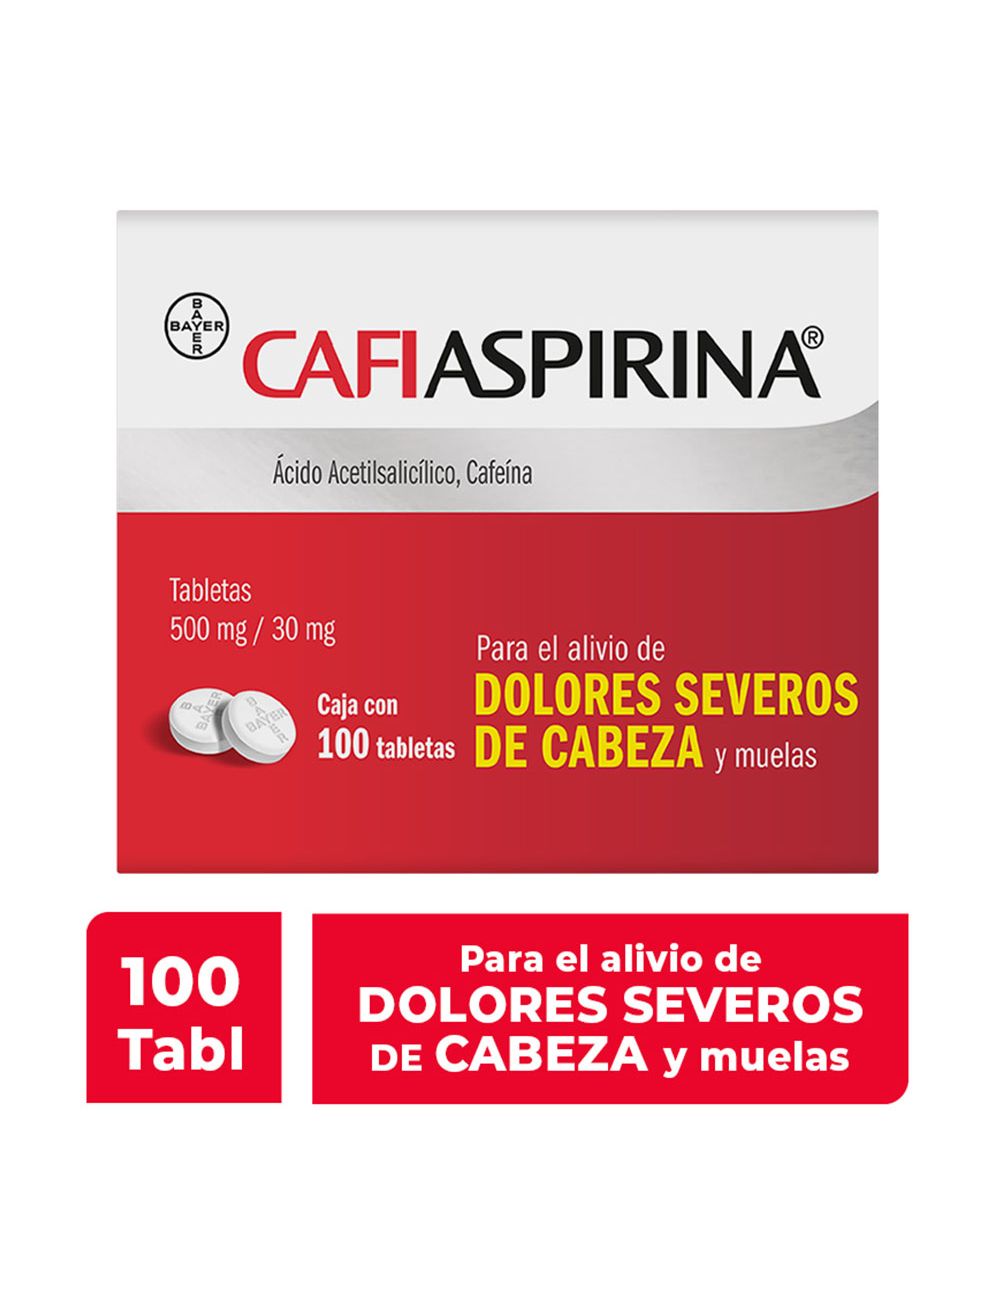 Cafiaspirina 500 mg/30 mg 100 Tabletas